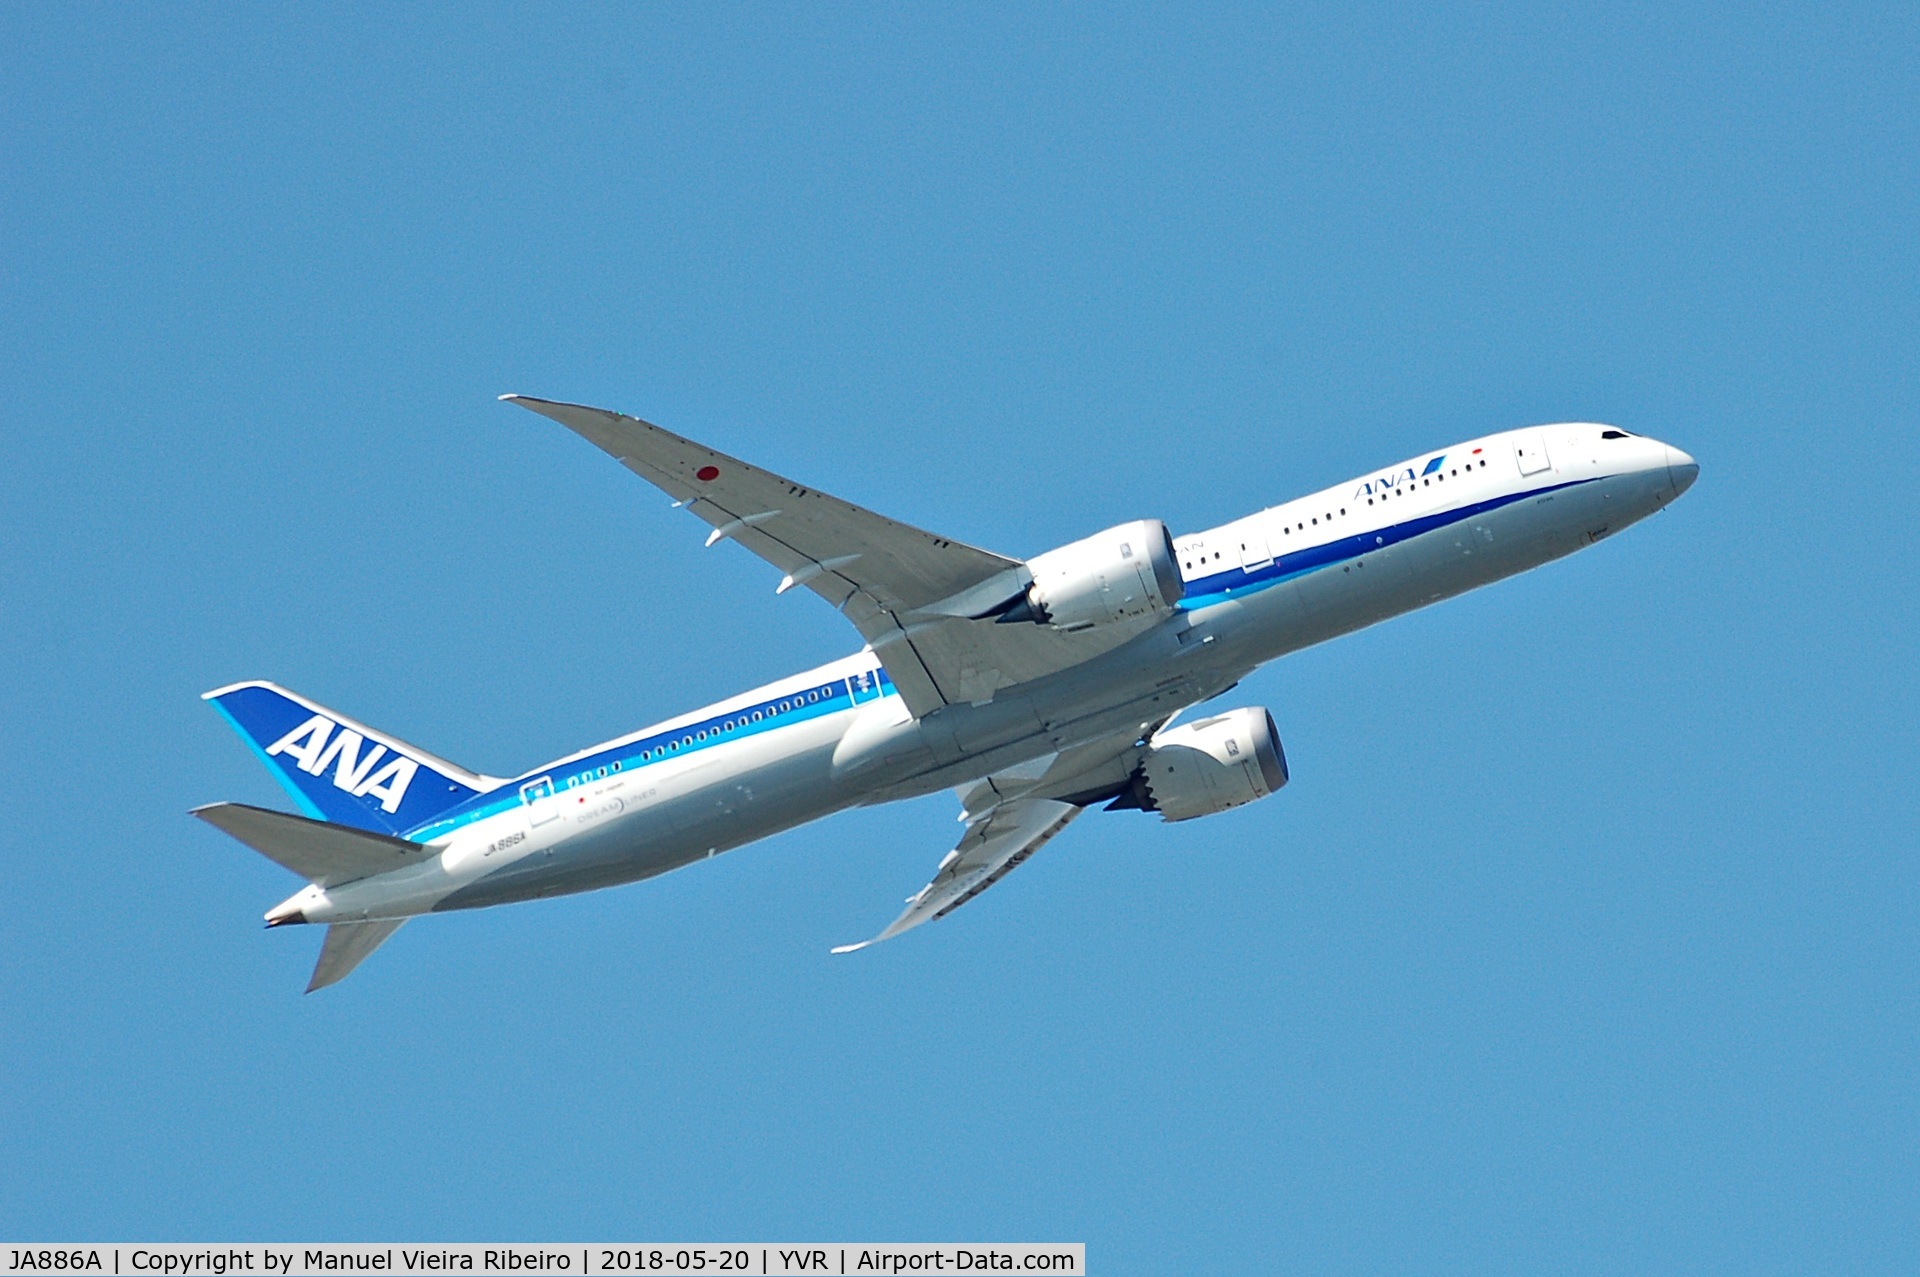 JA886A, 2016 Boeing 787-9 Dreamliner Dreamliner C/N 61522, NH115 to Haneda